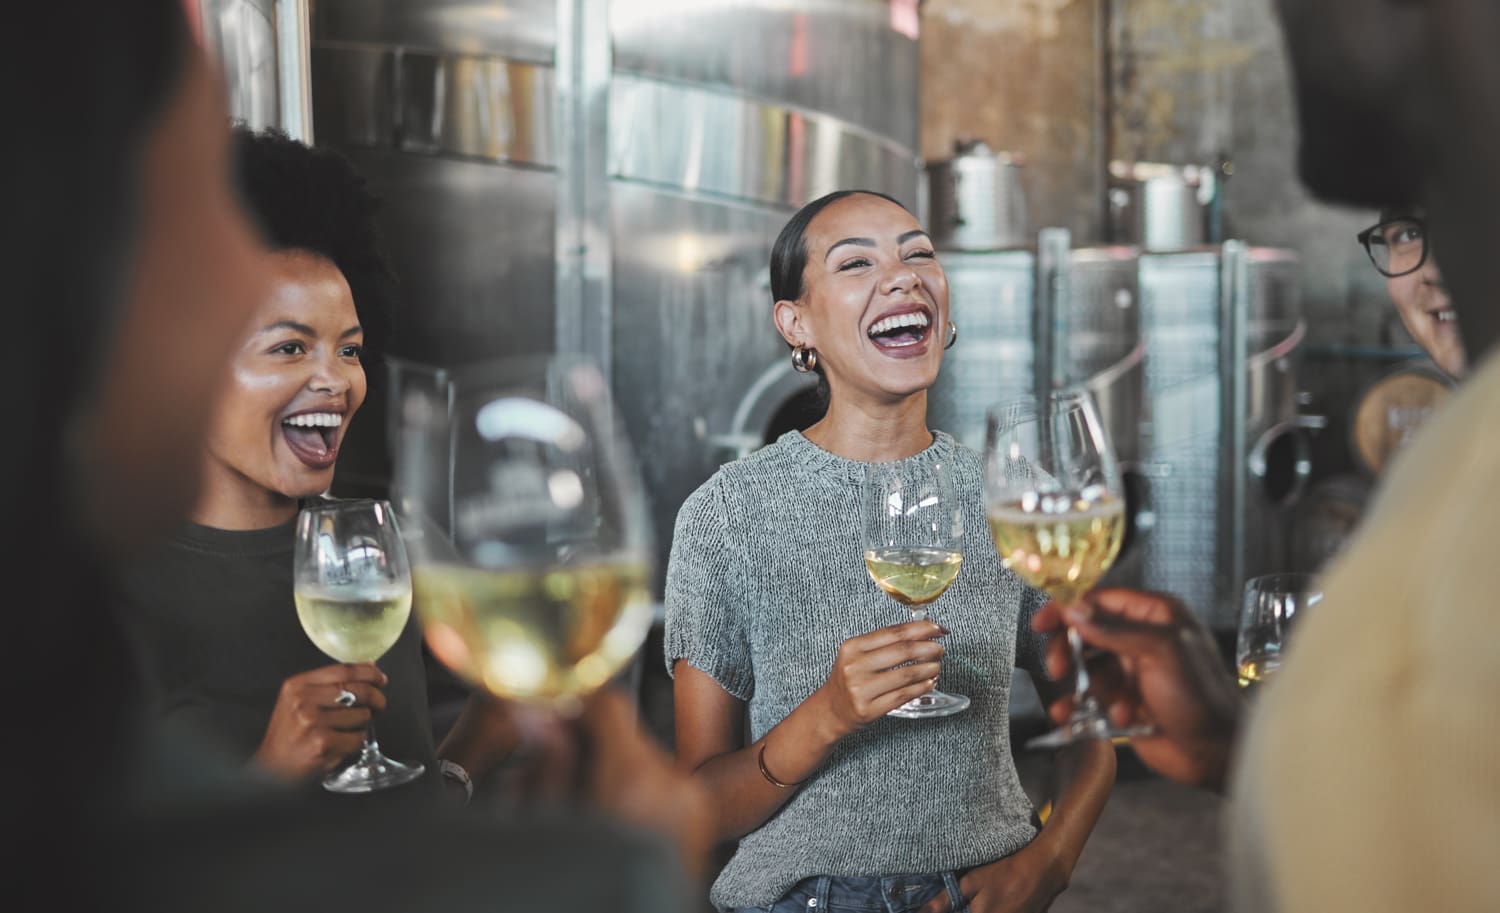 Personen mit Weinglas in der Hand lachen in einem Weinkeller